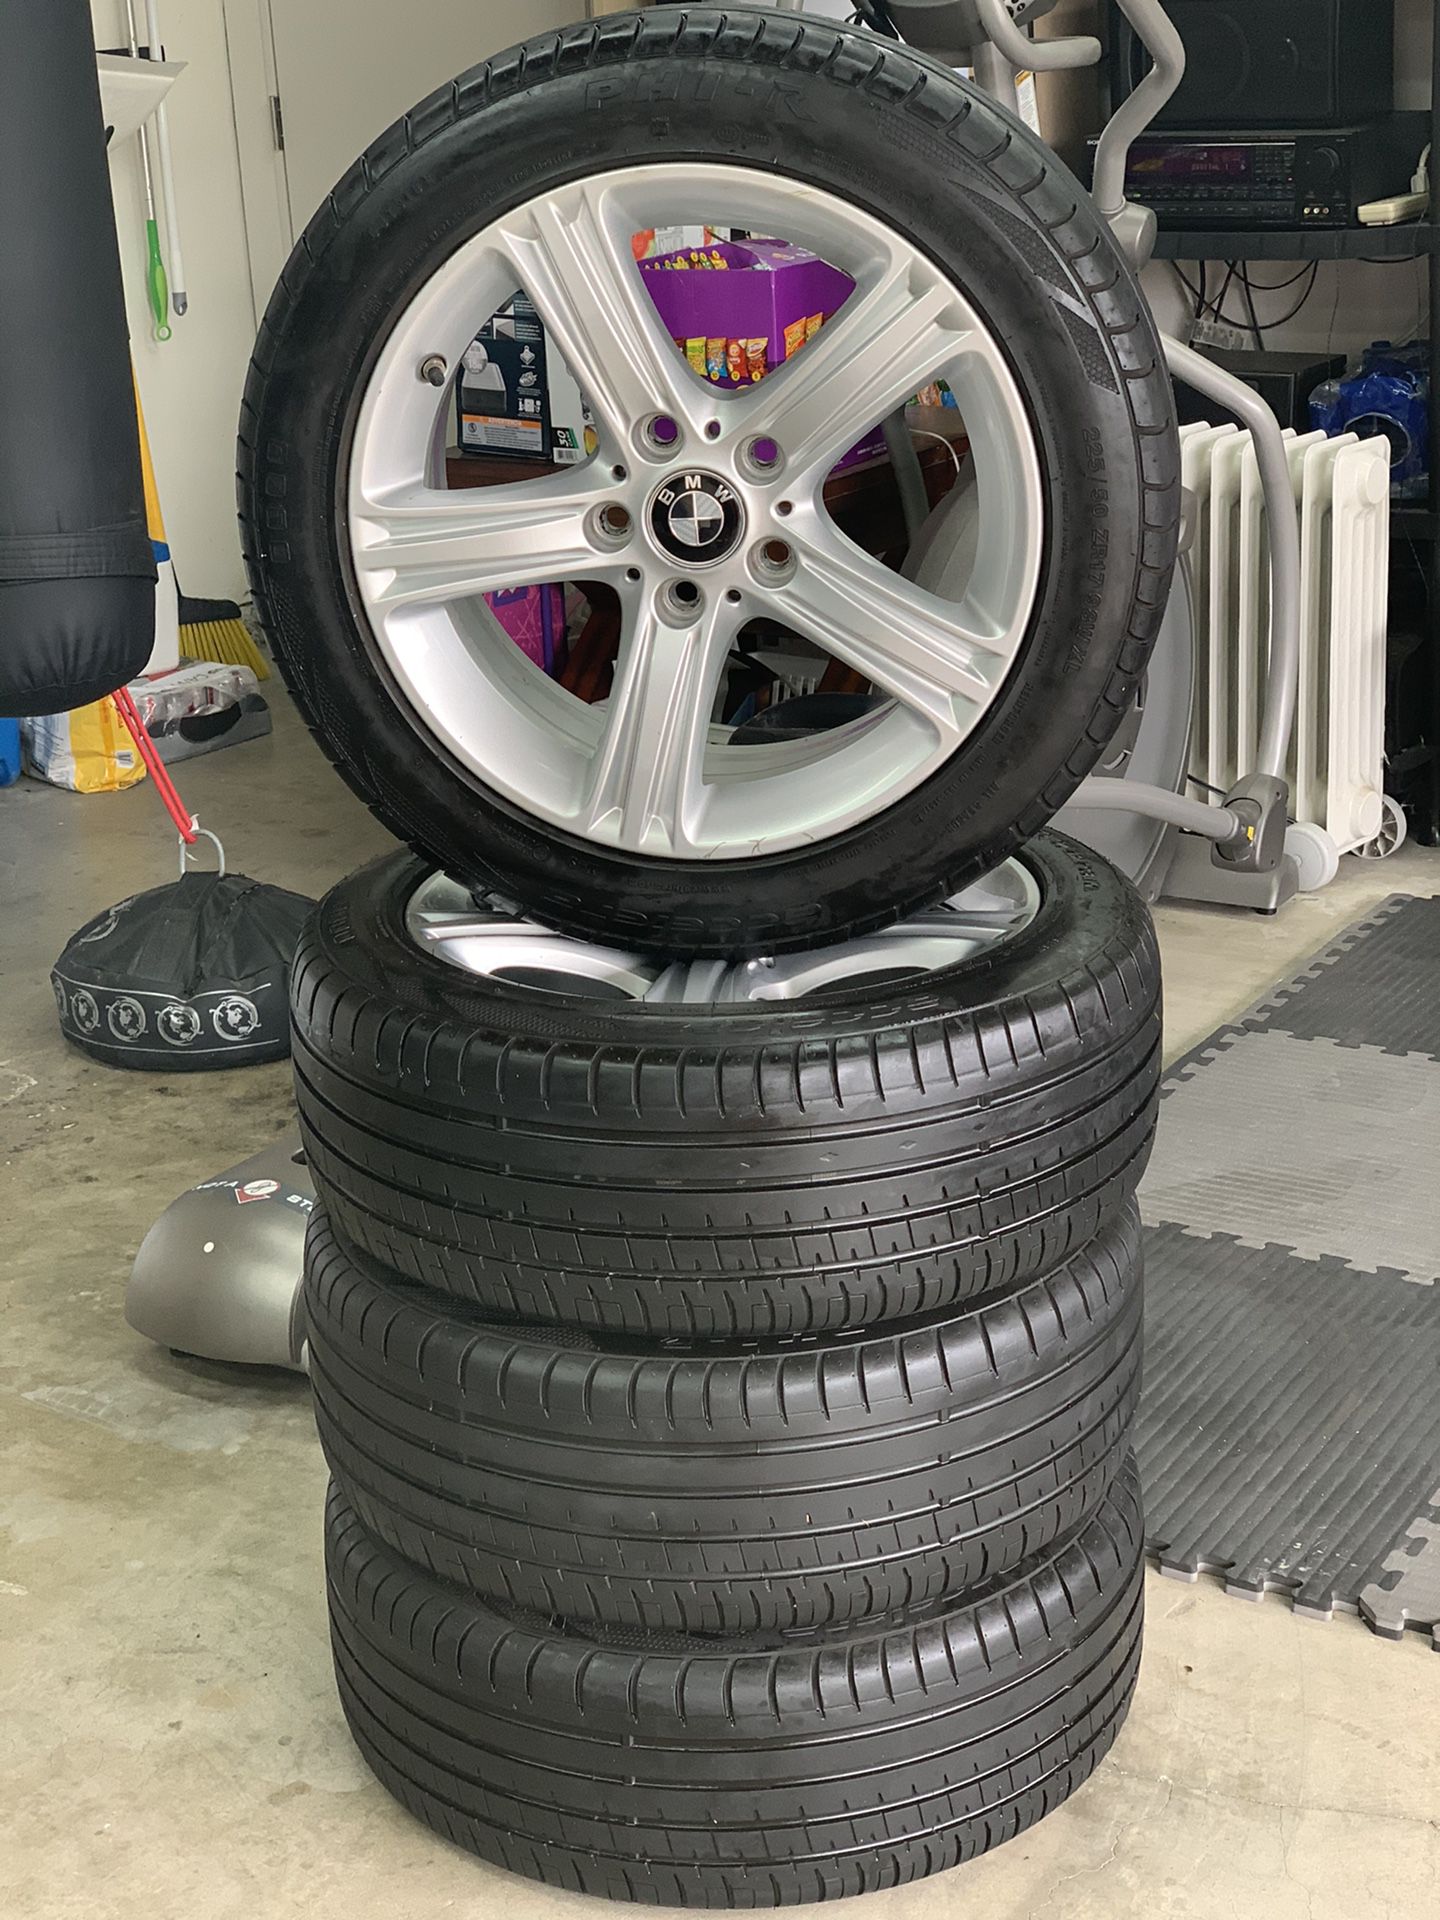 Bmw oem 17x7.5 5x120 inch rims wheels with 225x50x17 Acceiera tires